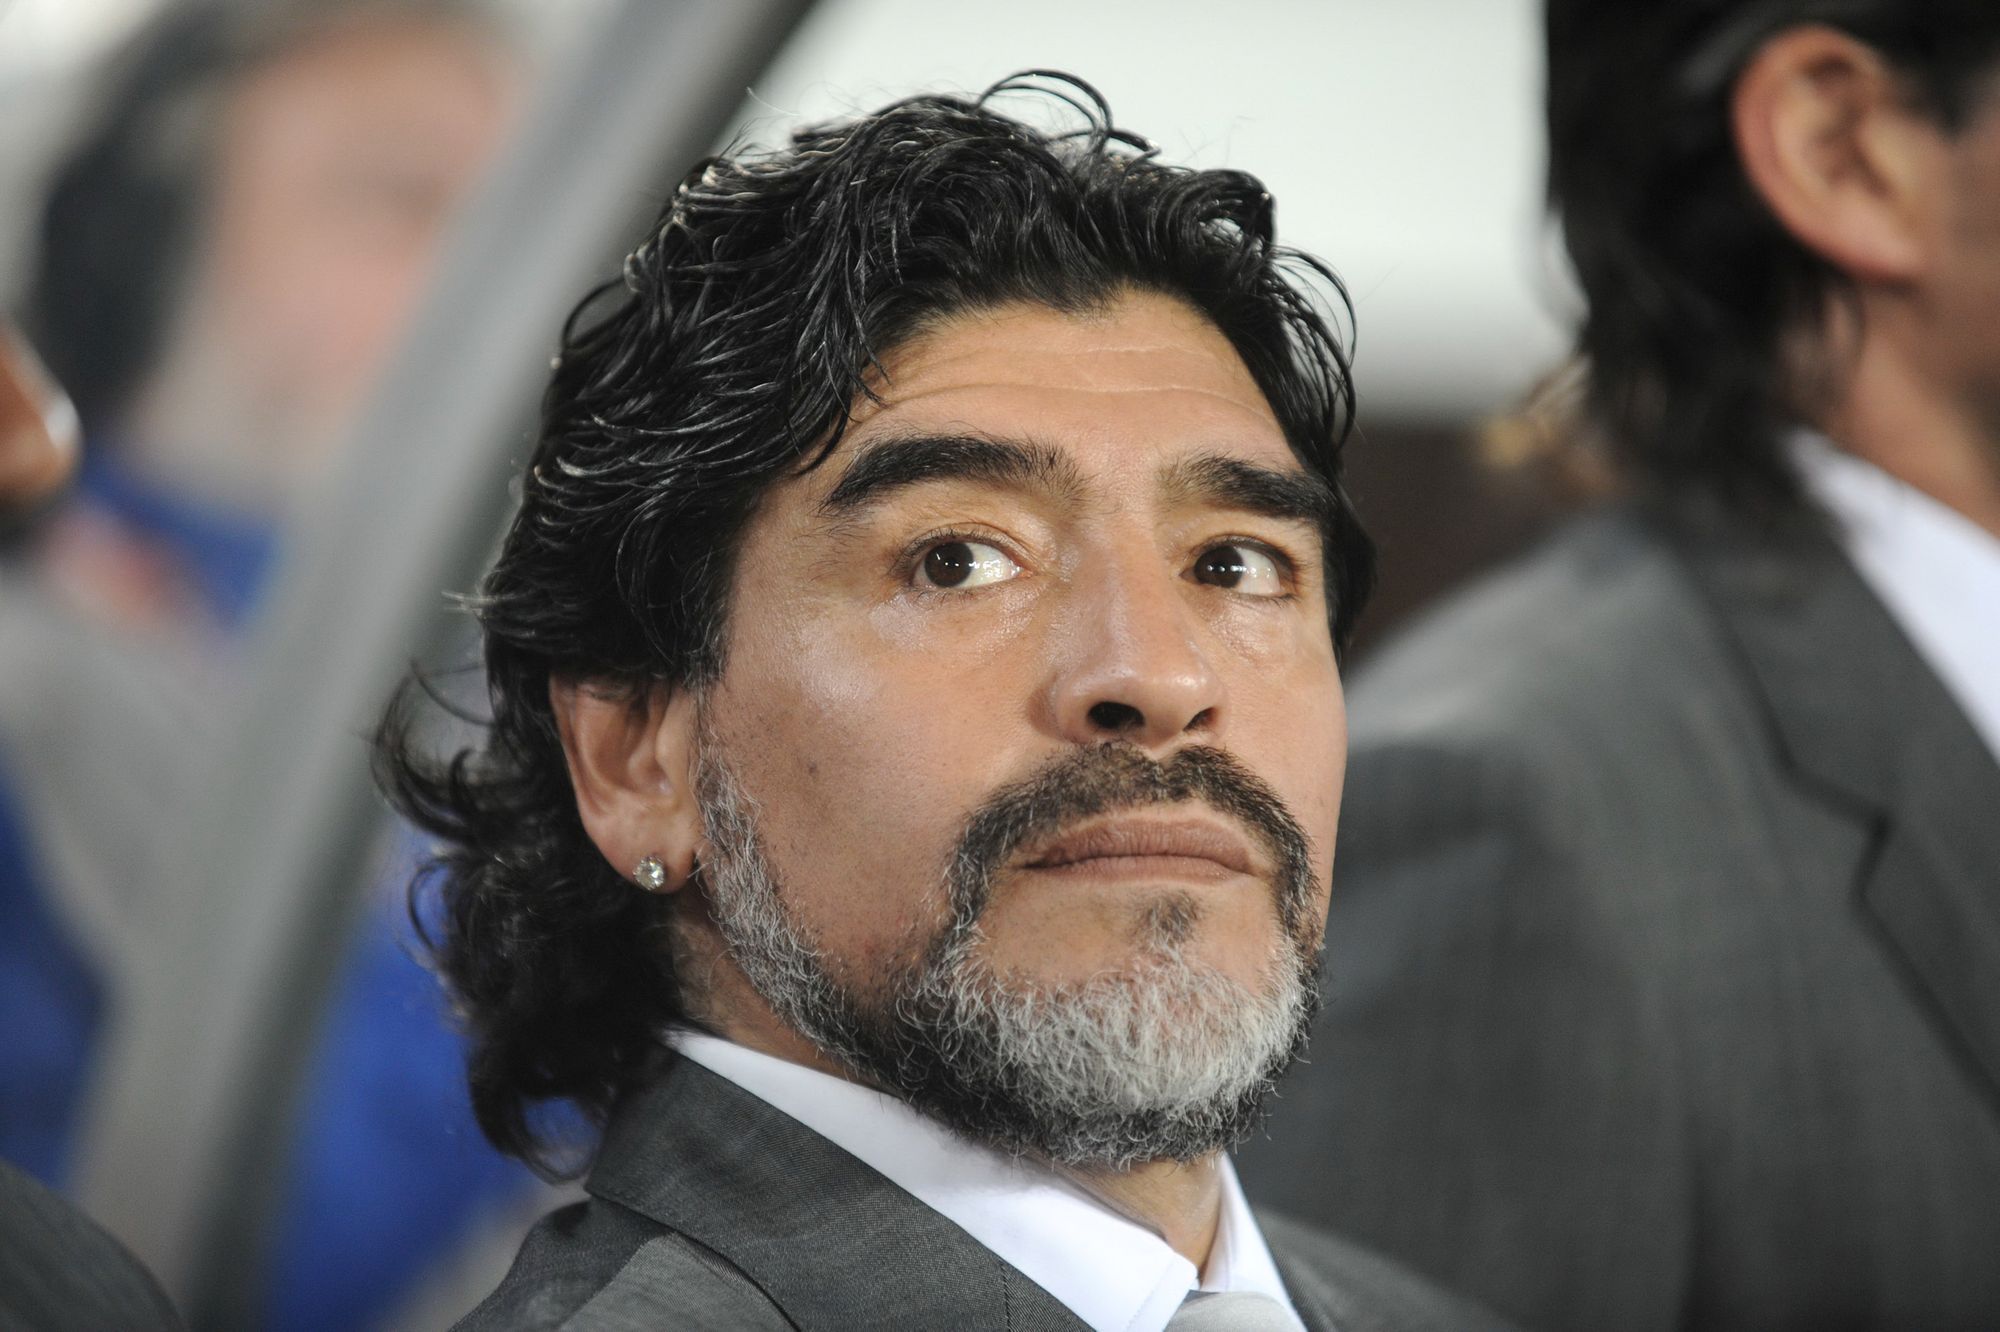 Halálos fenyegetéseket kap a focista, aki nem tisztelgett Maradona emléke előtt /Fotó: Northfoto